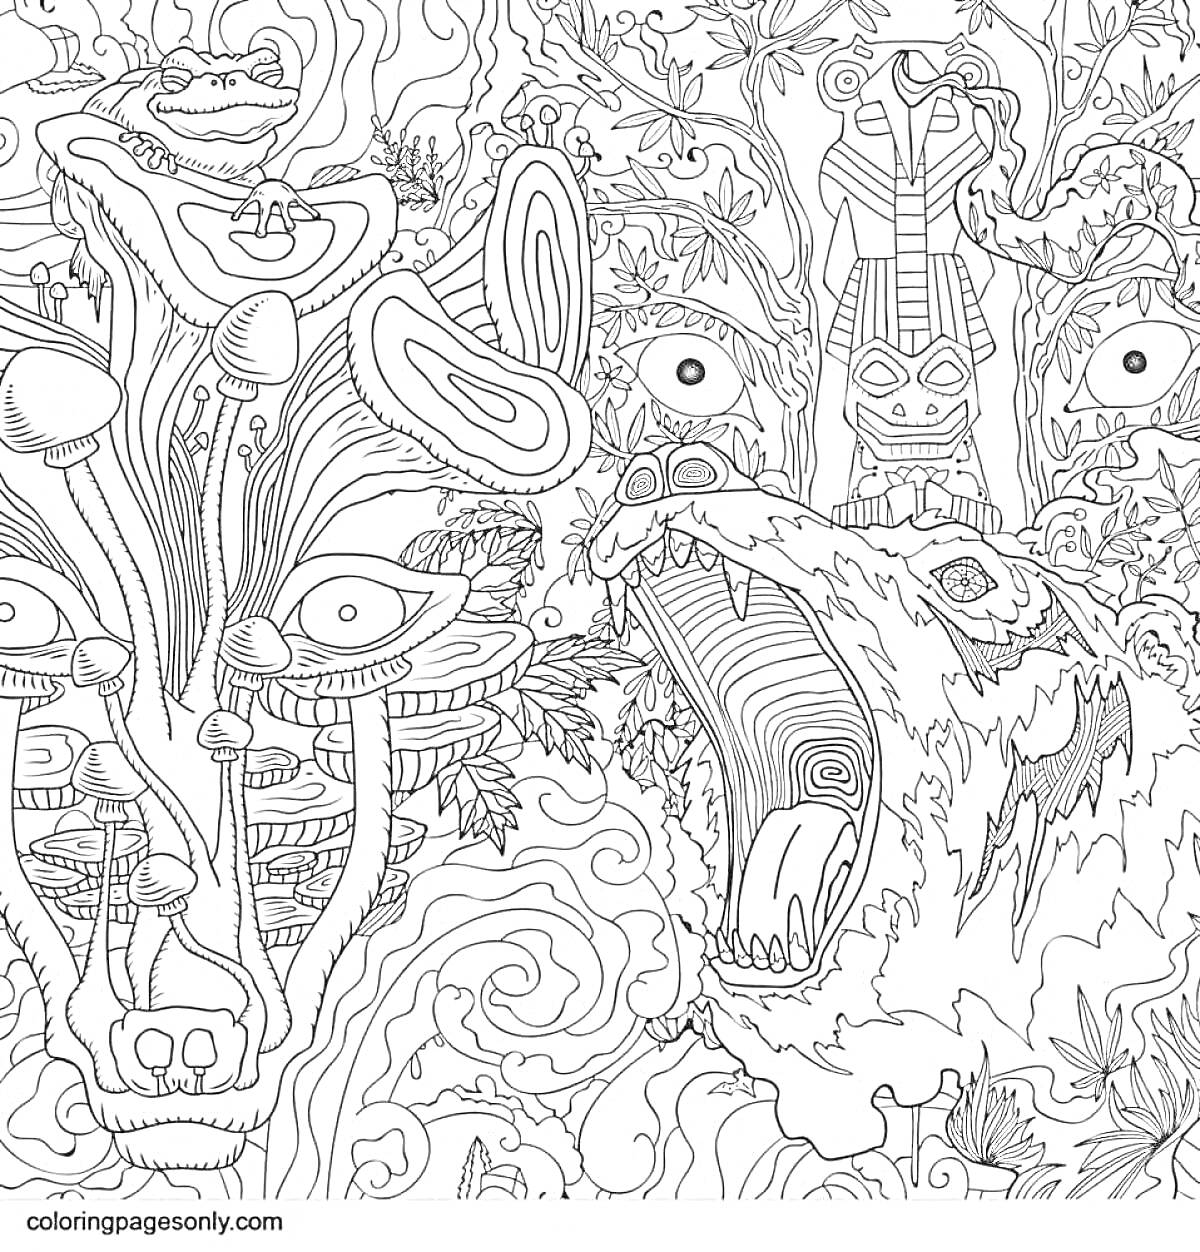 Раскраска Психоделическое видение: грибы, глаза, дерево со звериными чертами, ревущий медведь